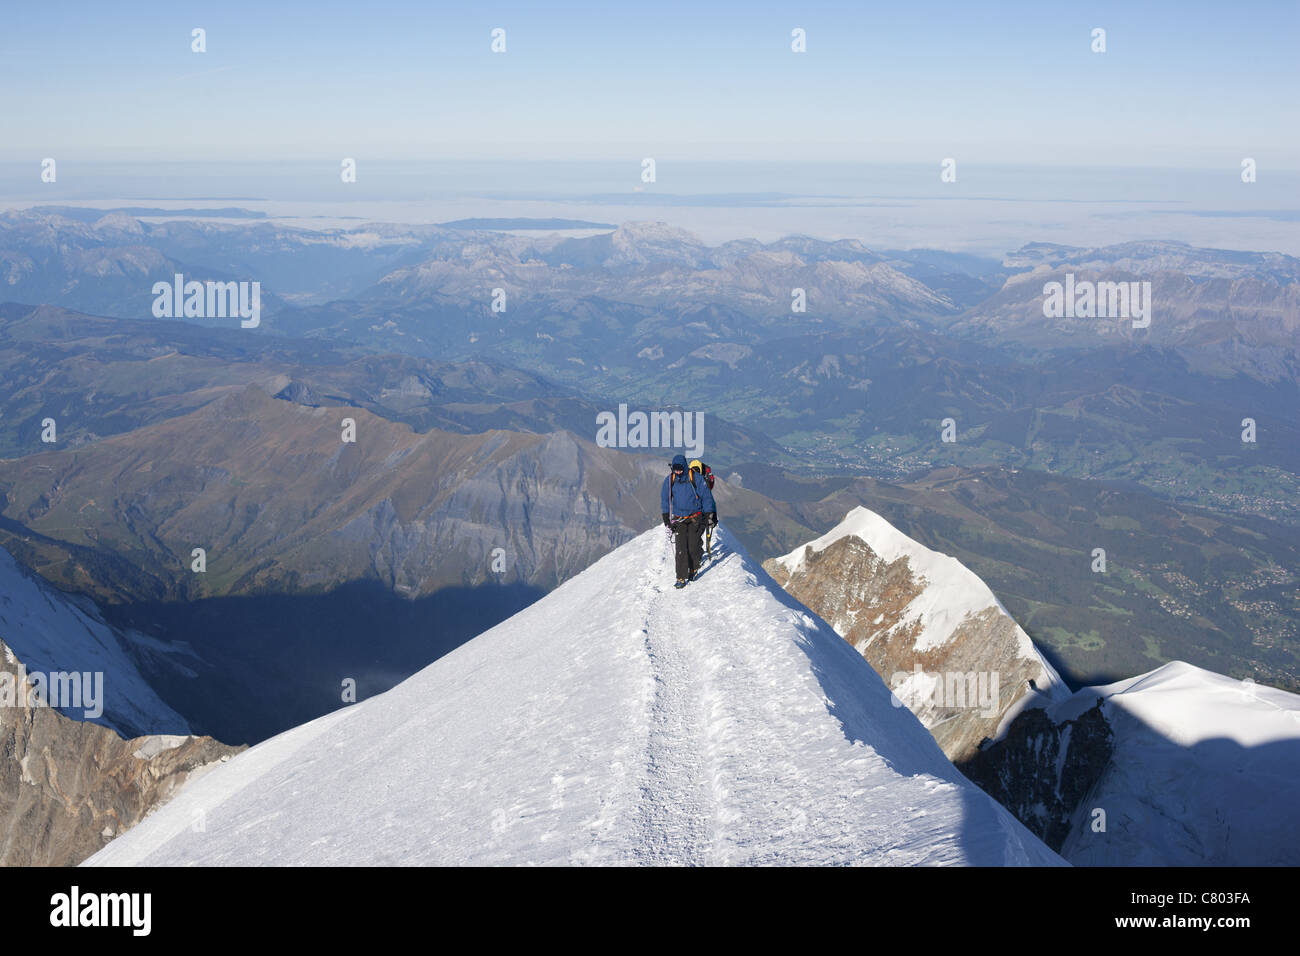 Alpinistes atteignant le sommet (altitude: 4810m) du Mont blanc.Chamonix, haute-Savoie, Auvergne-Rhône-Alpes, France. Banque D'Images